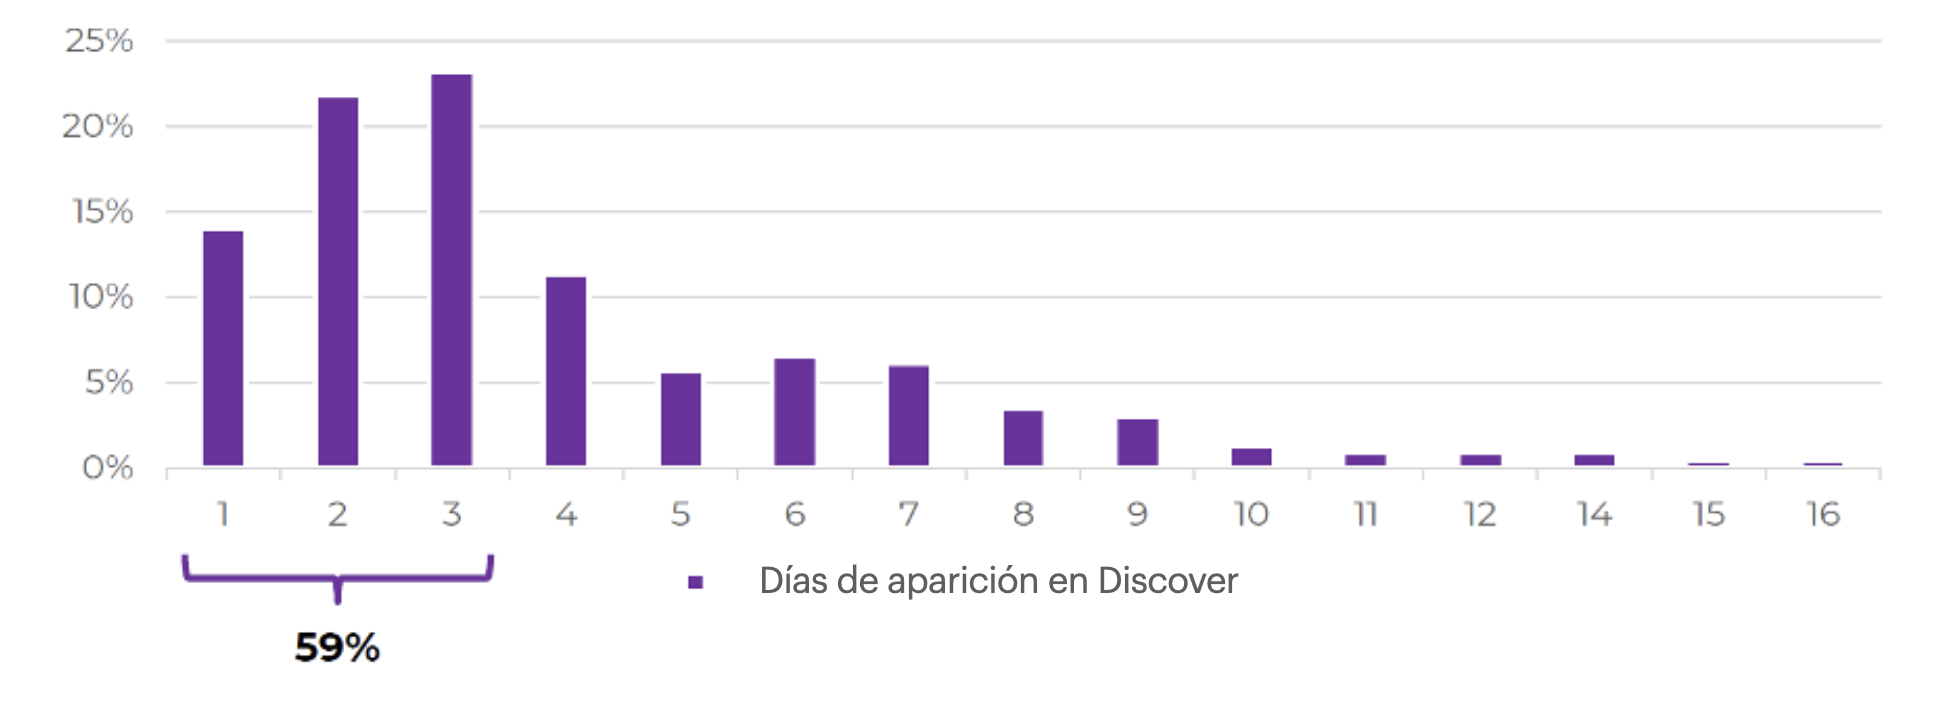 % de artículos por cantidad de días de aparición en discover